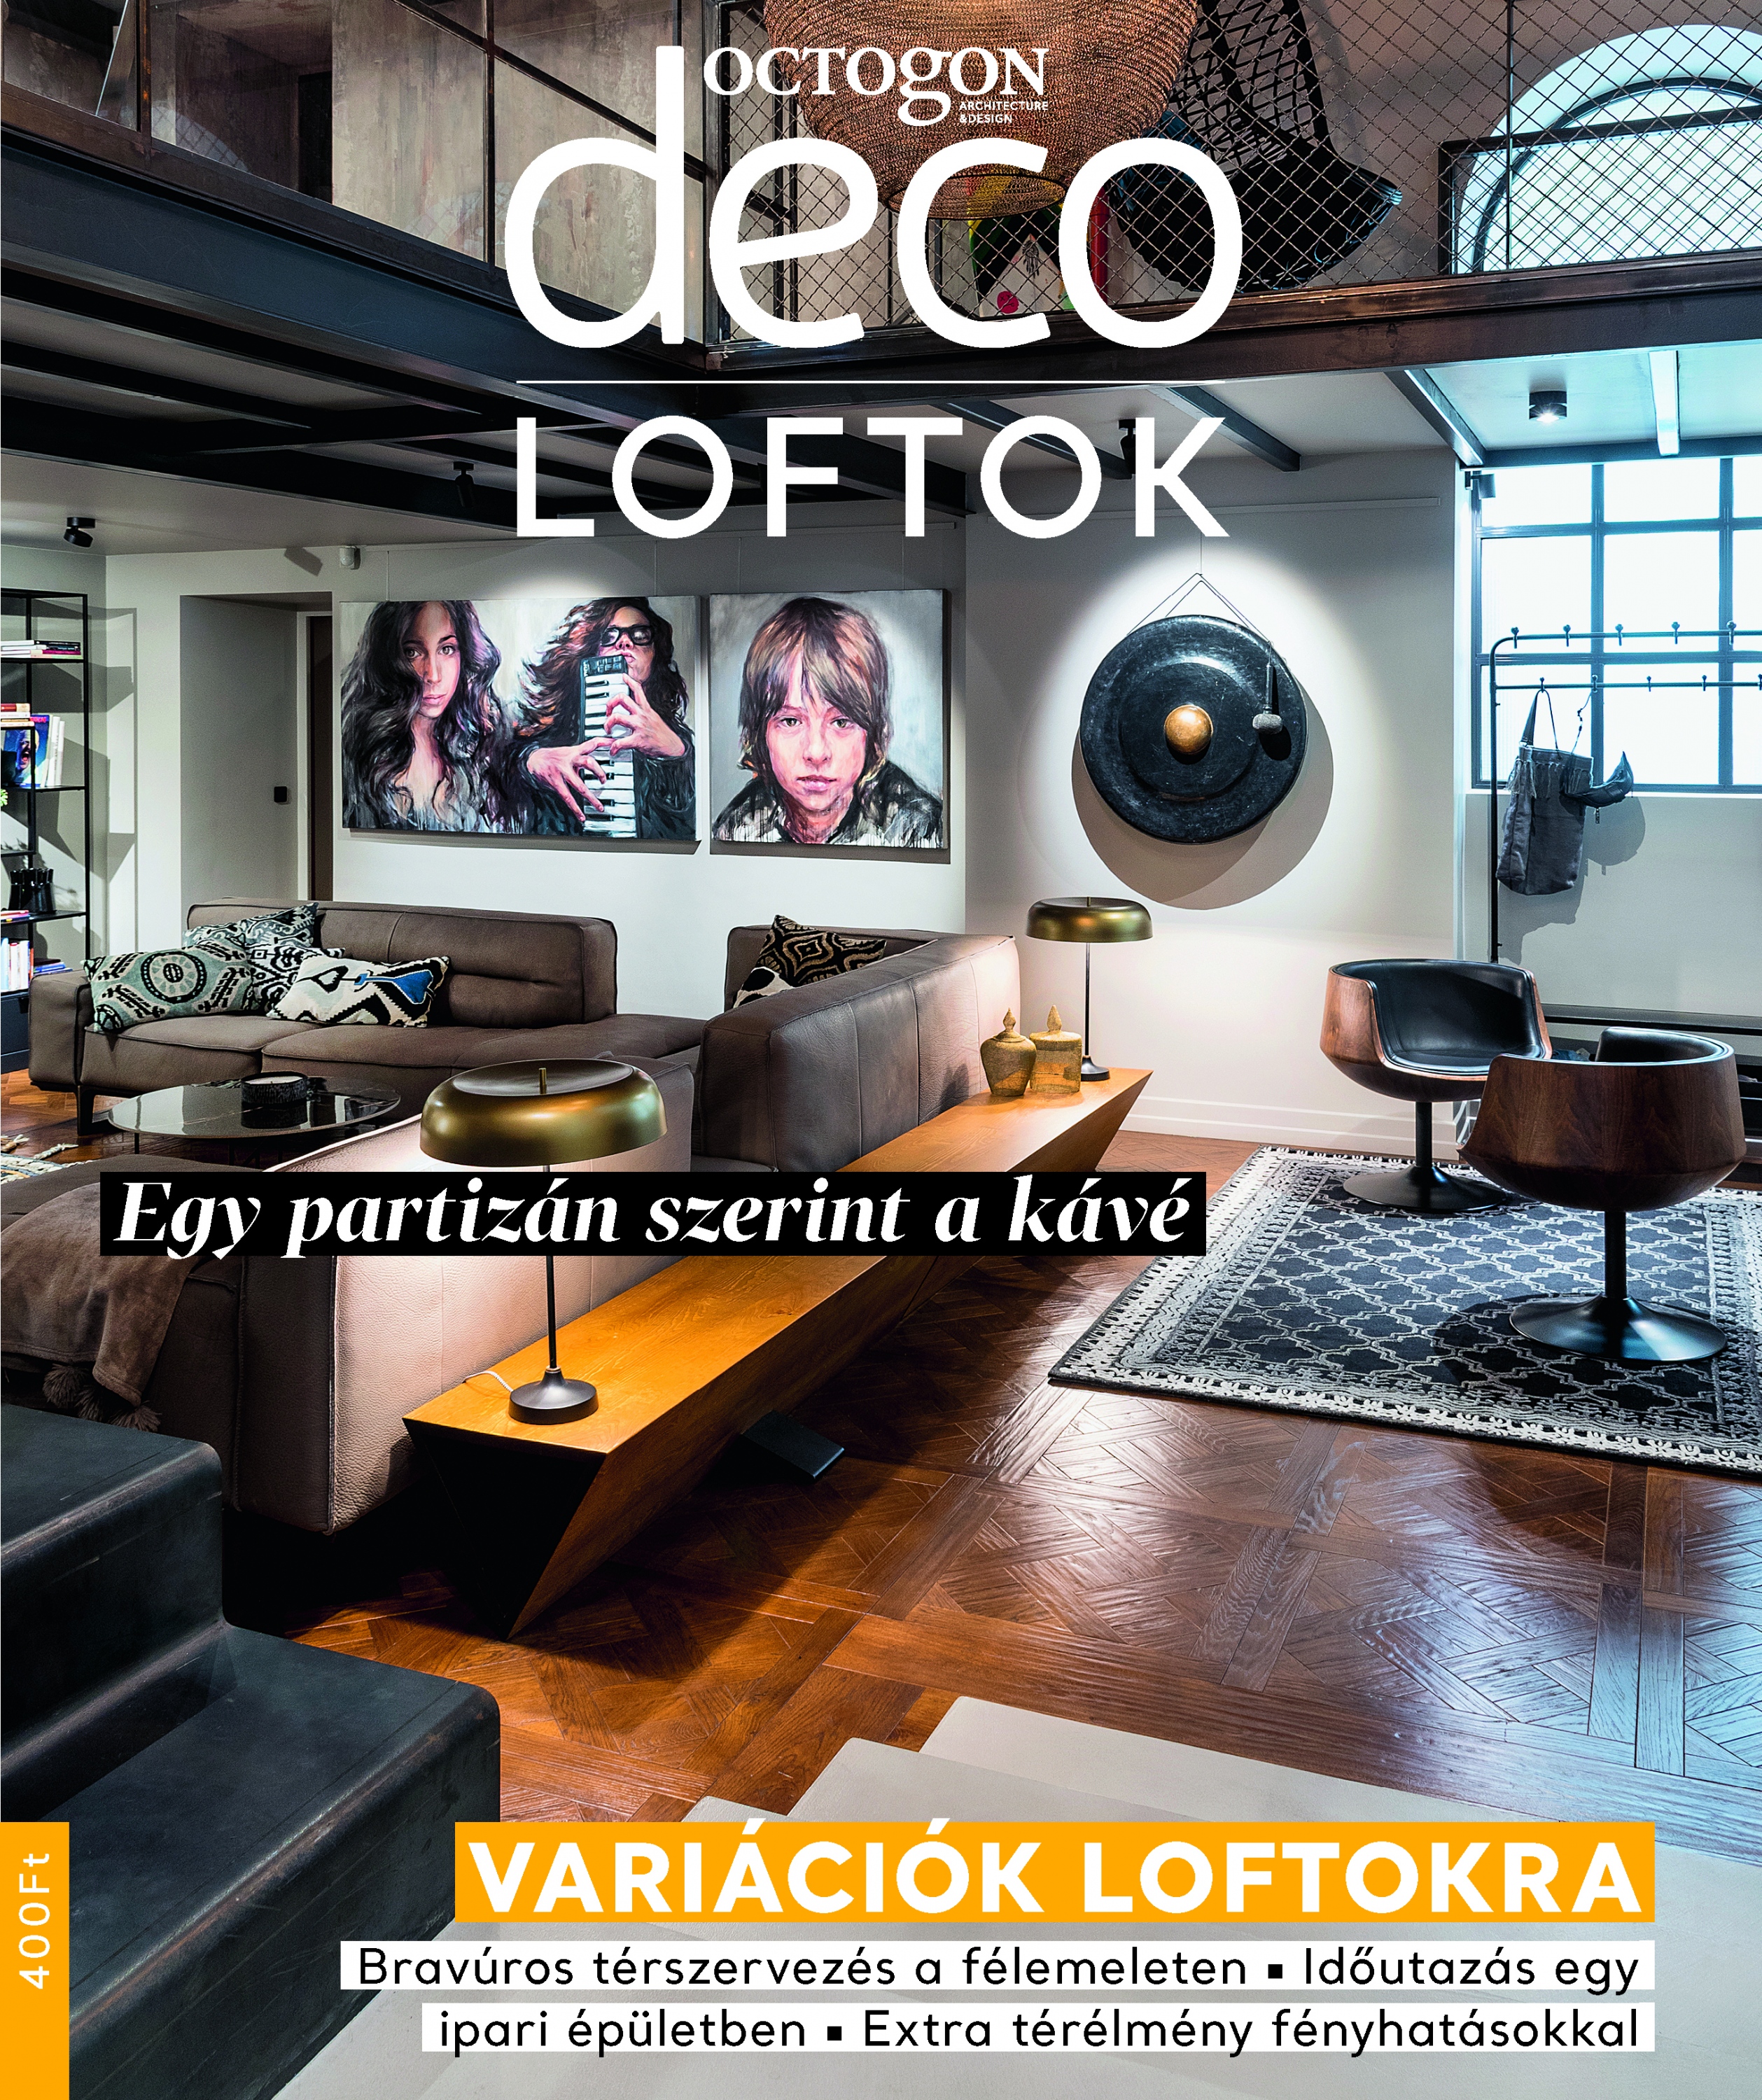 Az Octogon Deco Magazin külön melléklettel készült a S/ALON Budapest kiállításra, fókuszban a loftlakásokkal.